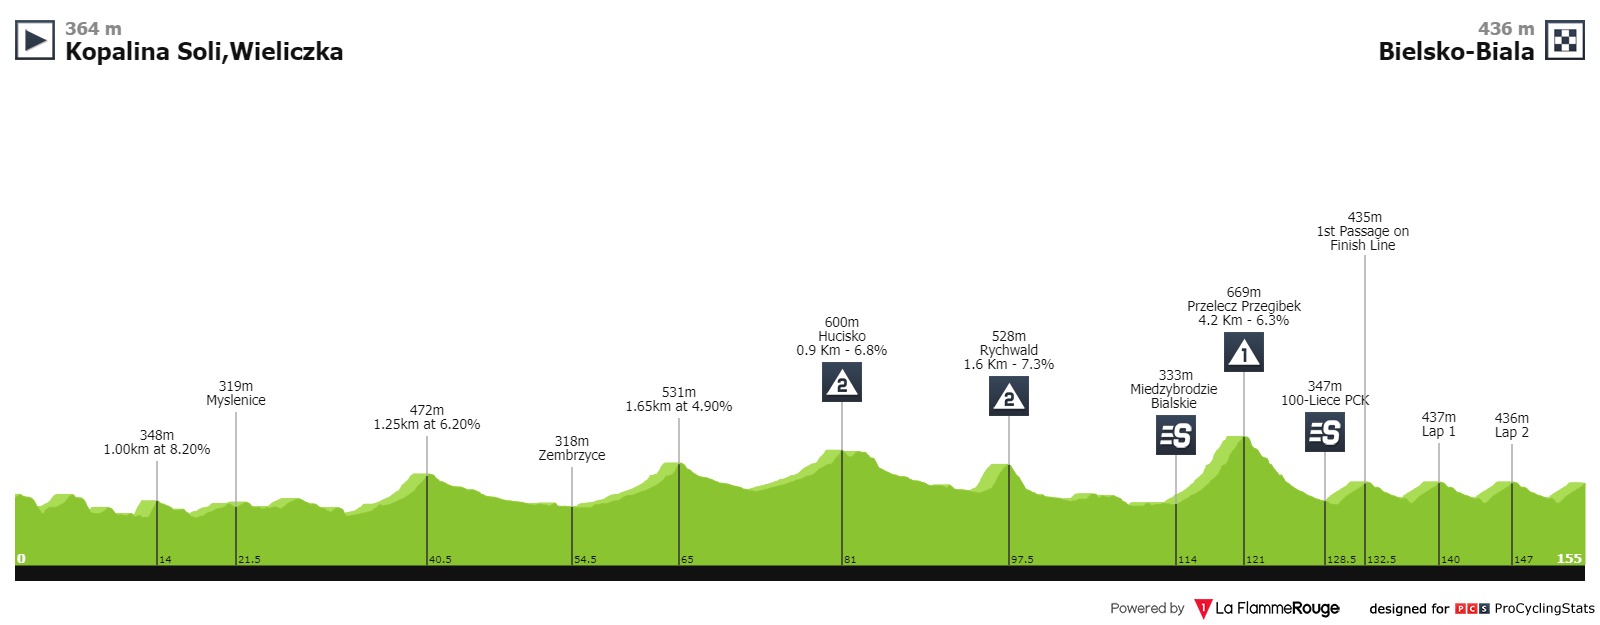 tour-de-pologne-2019-stage-5-profile-031c88a450.jpg